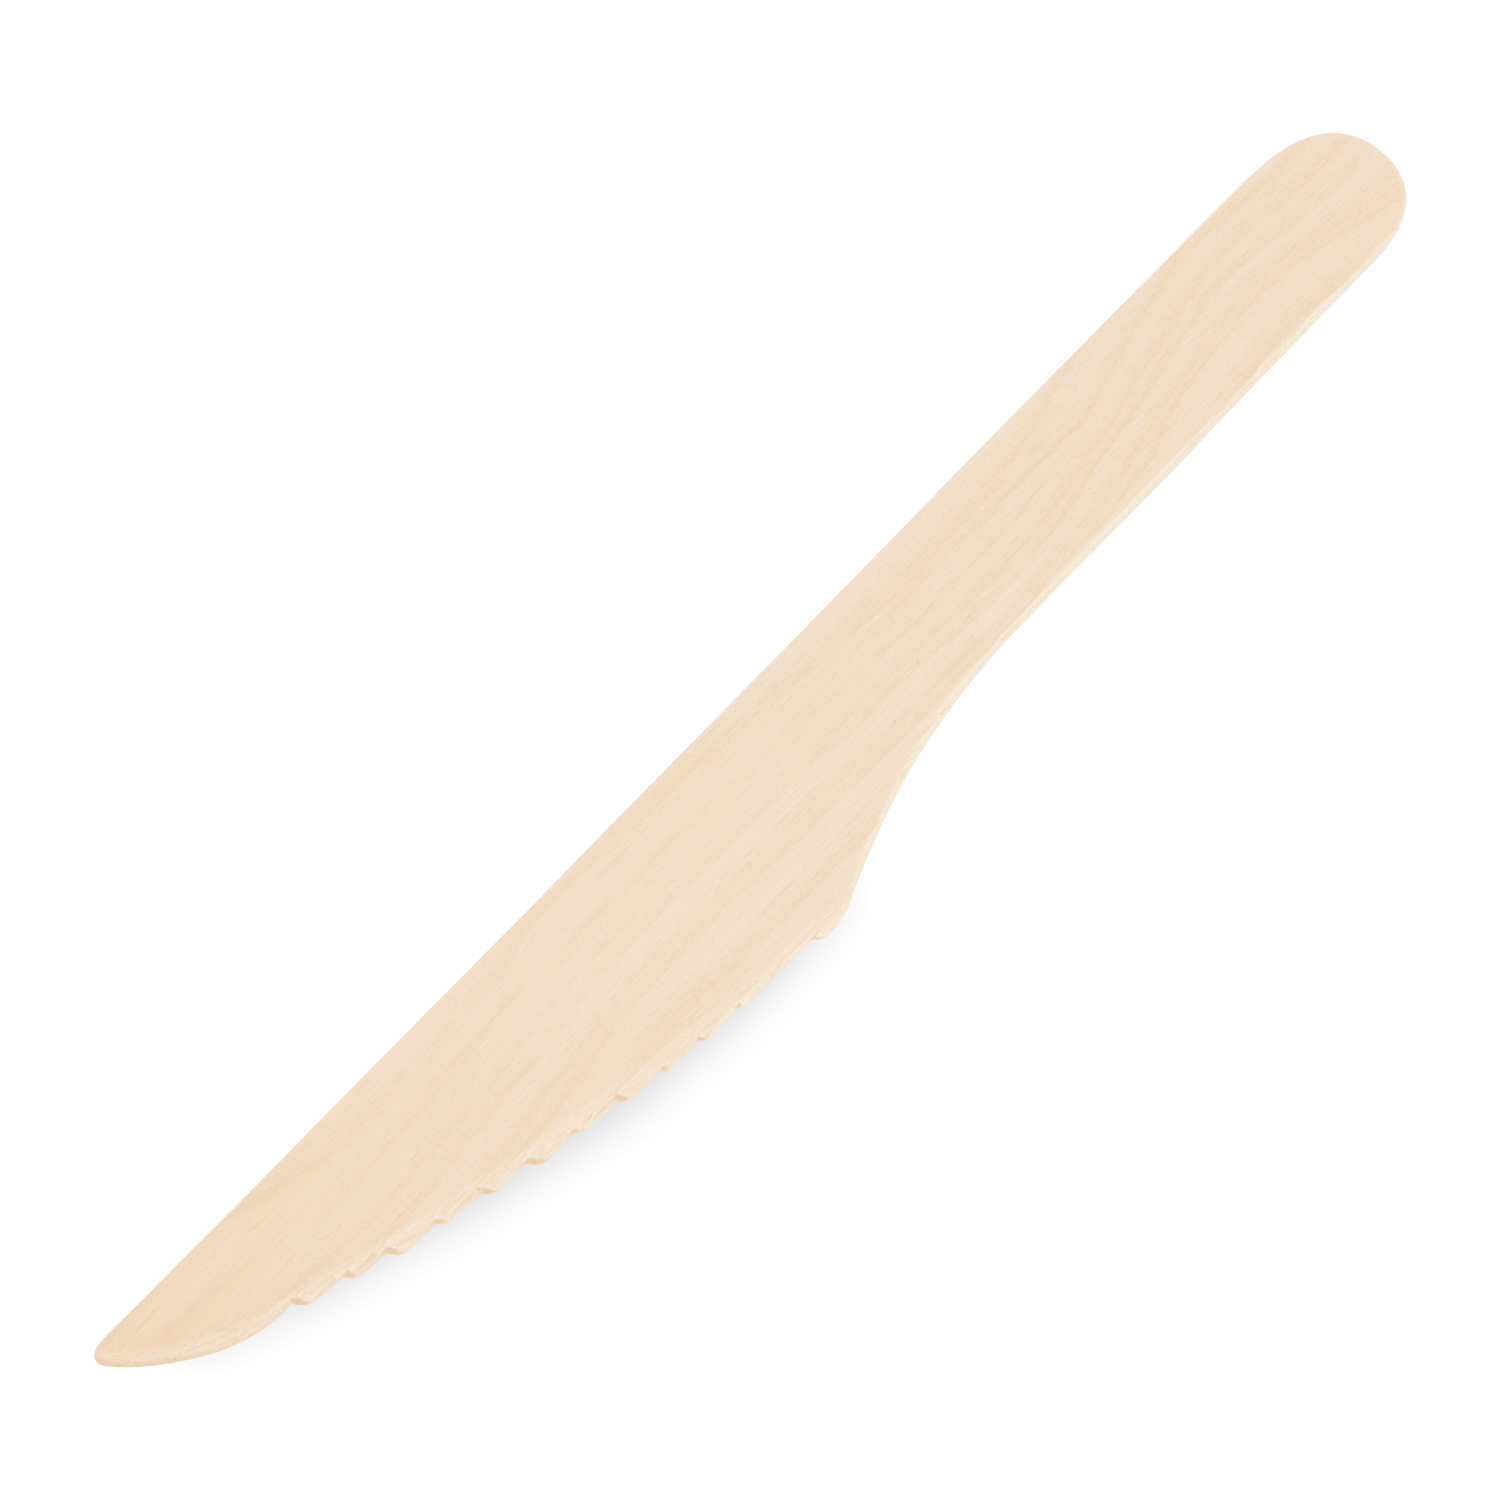 Messer aus Holz 16,5cm - 10 Stück